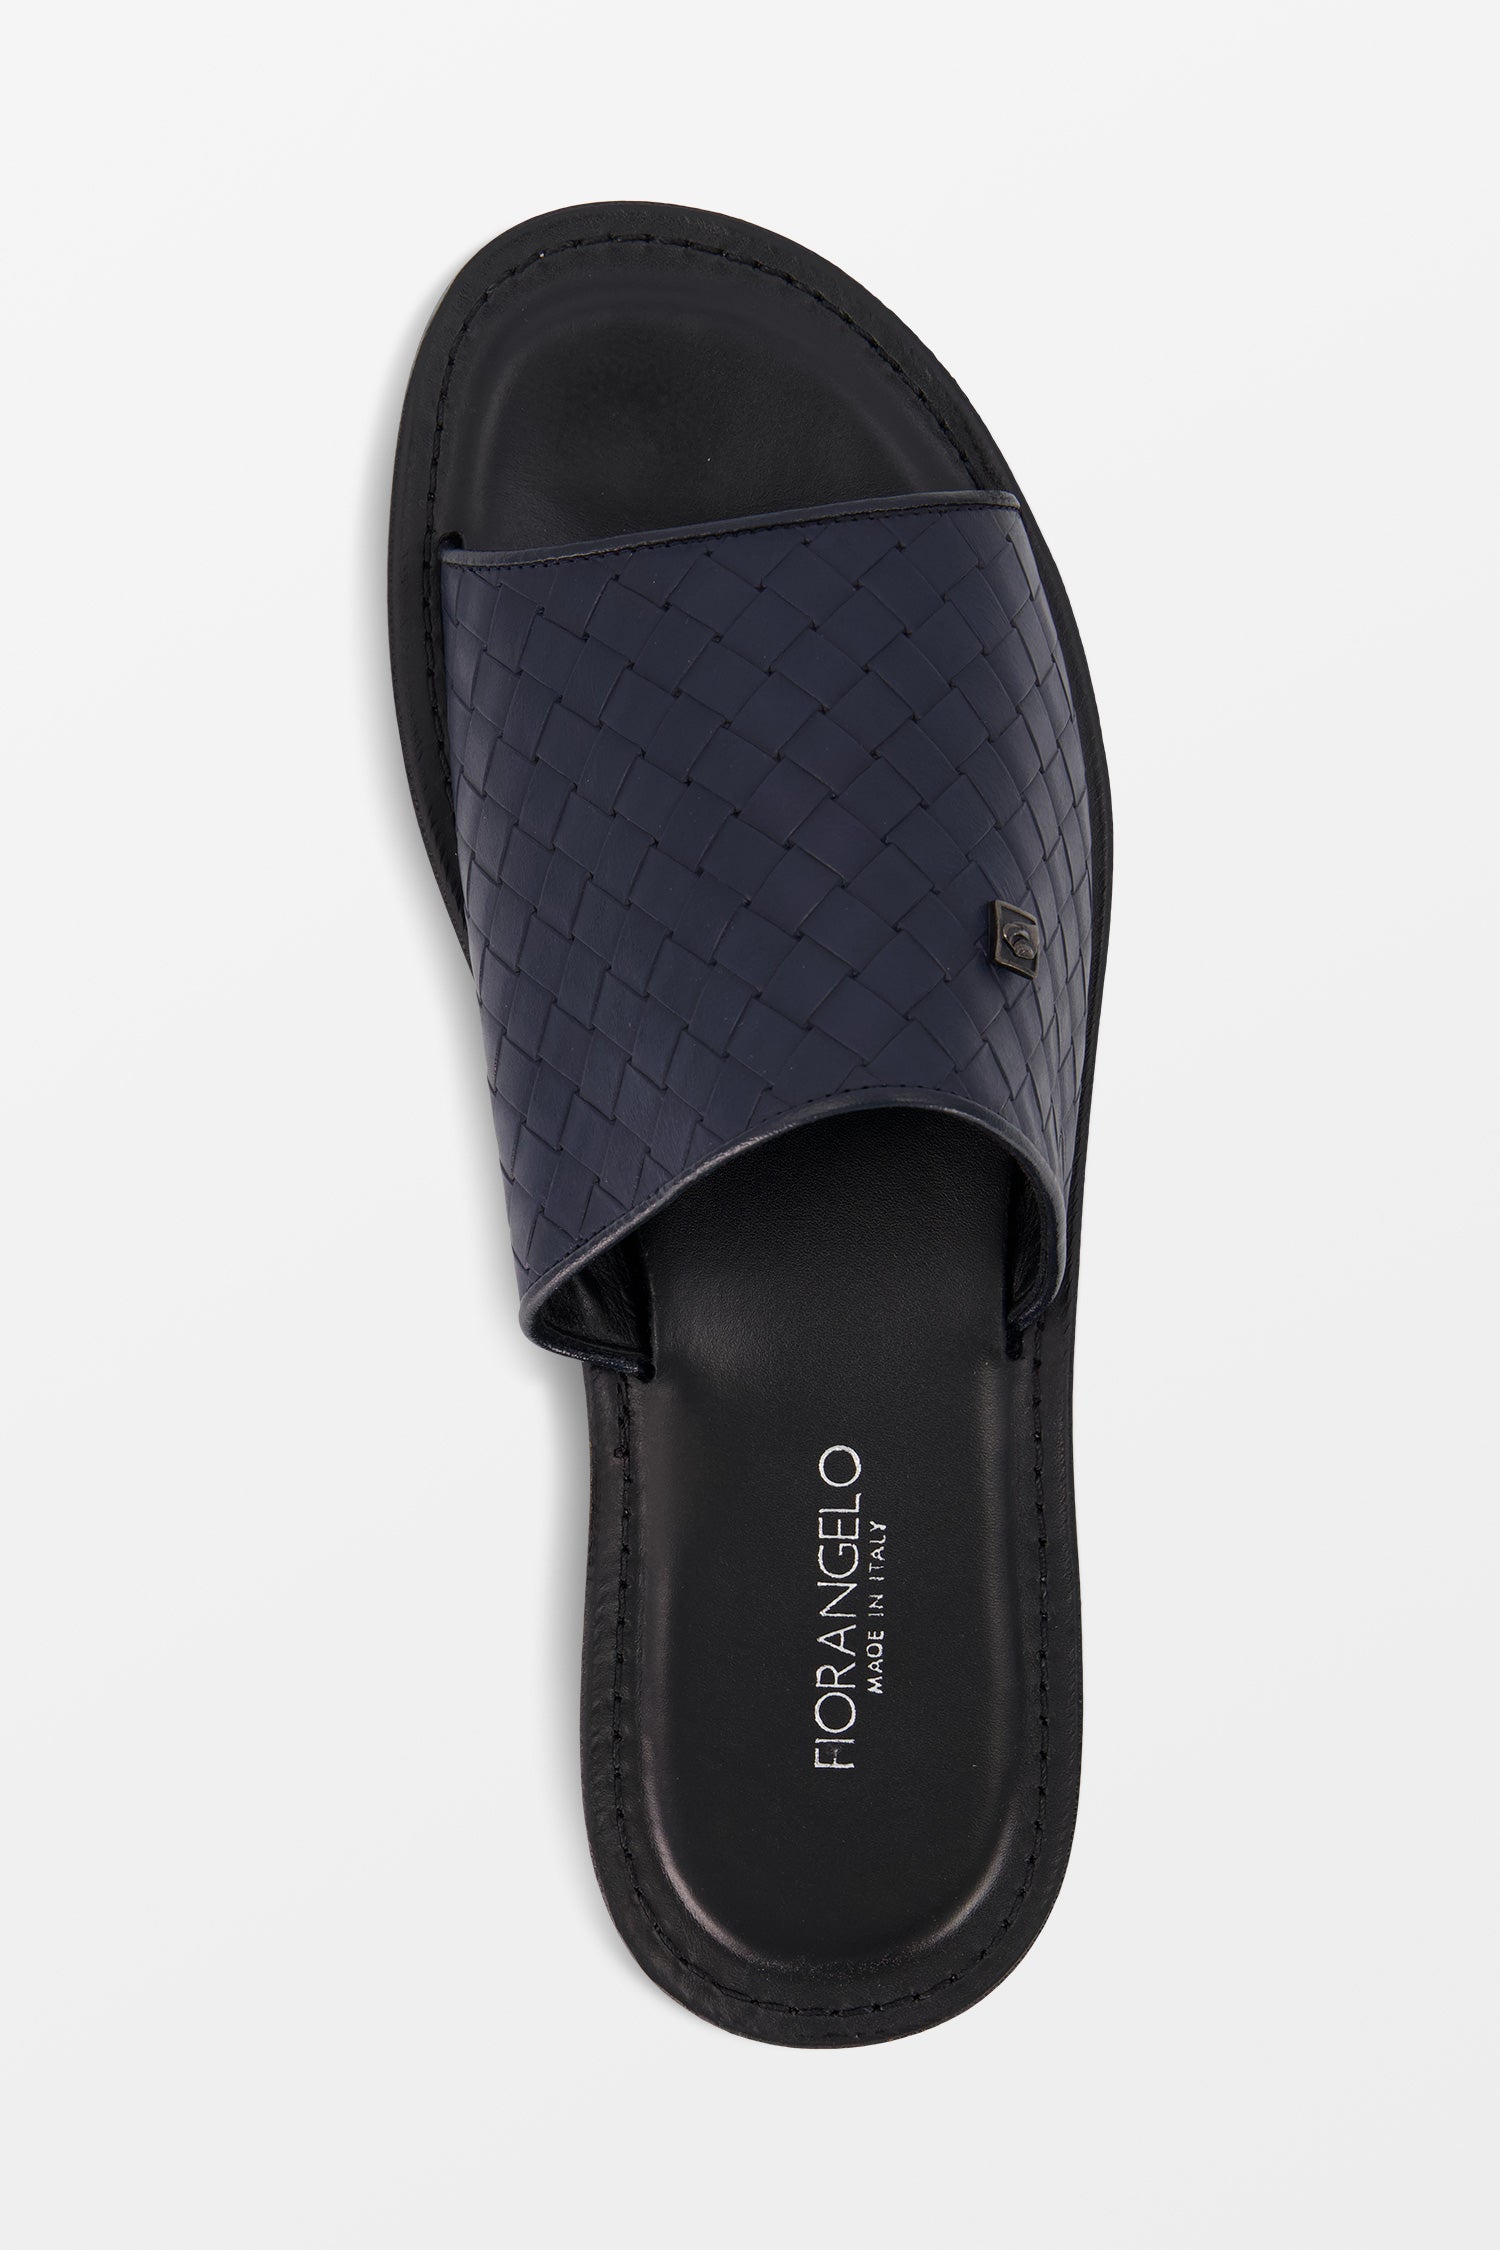 Fiorangelo Dark Blue Leather Slides